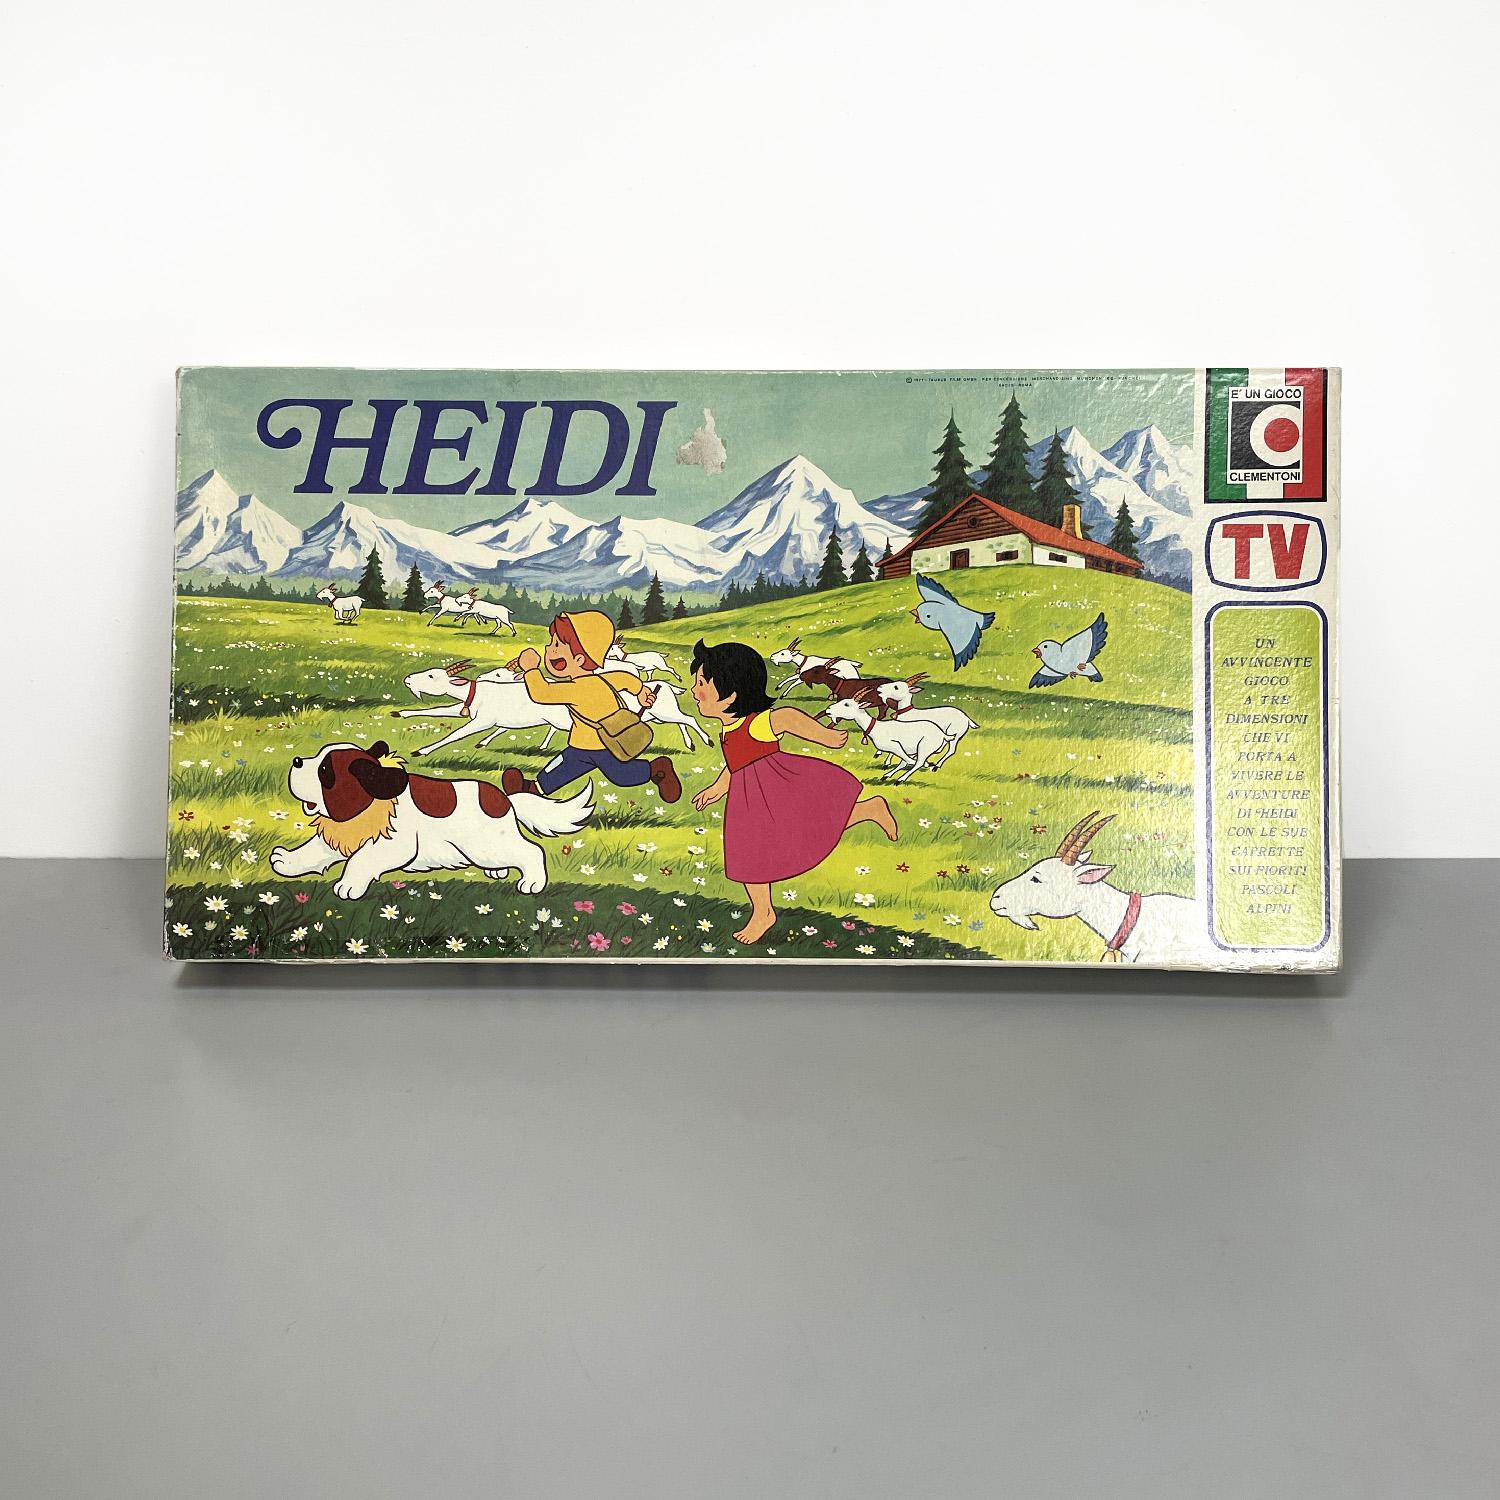 Modernes italienisches Heidi-Brettspiel von Clementoni, 1980er Jahre
Heidi-Brettspiel mit rechteckiger Schachtel, die die für das Spiel notwendigen Spielsteine enthält. Oben befindet sich ein Bild, das die Figur aus dem berühmten Zeichentrickfilm